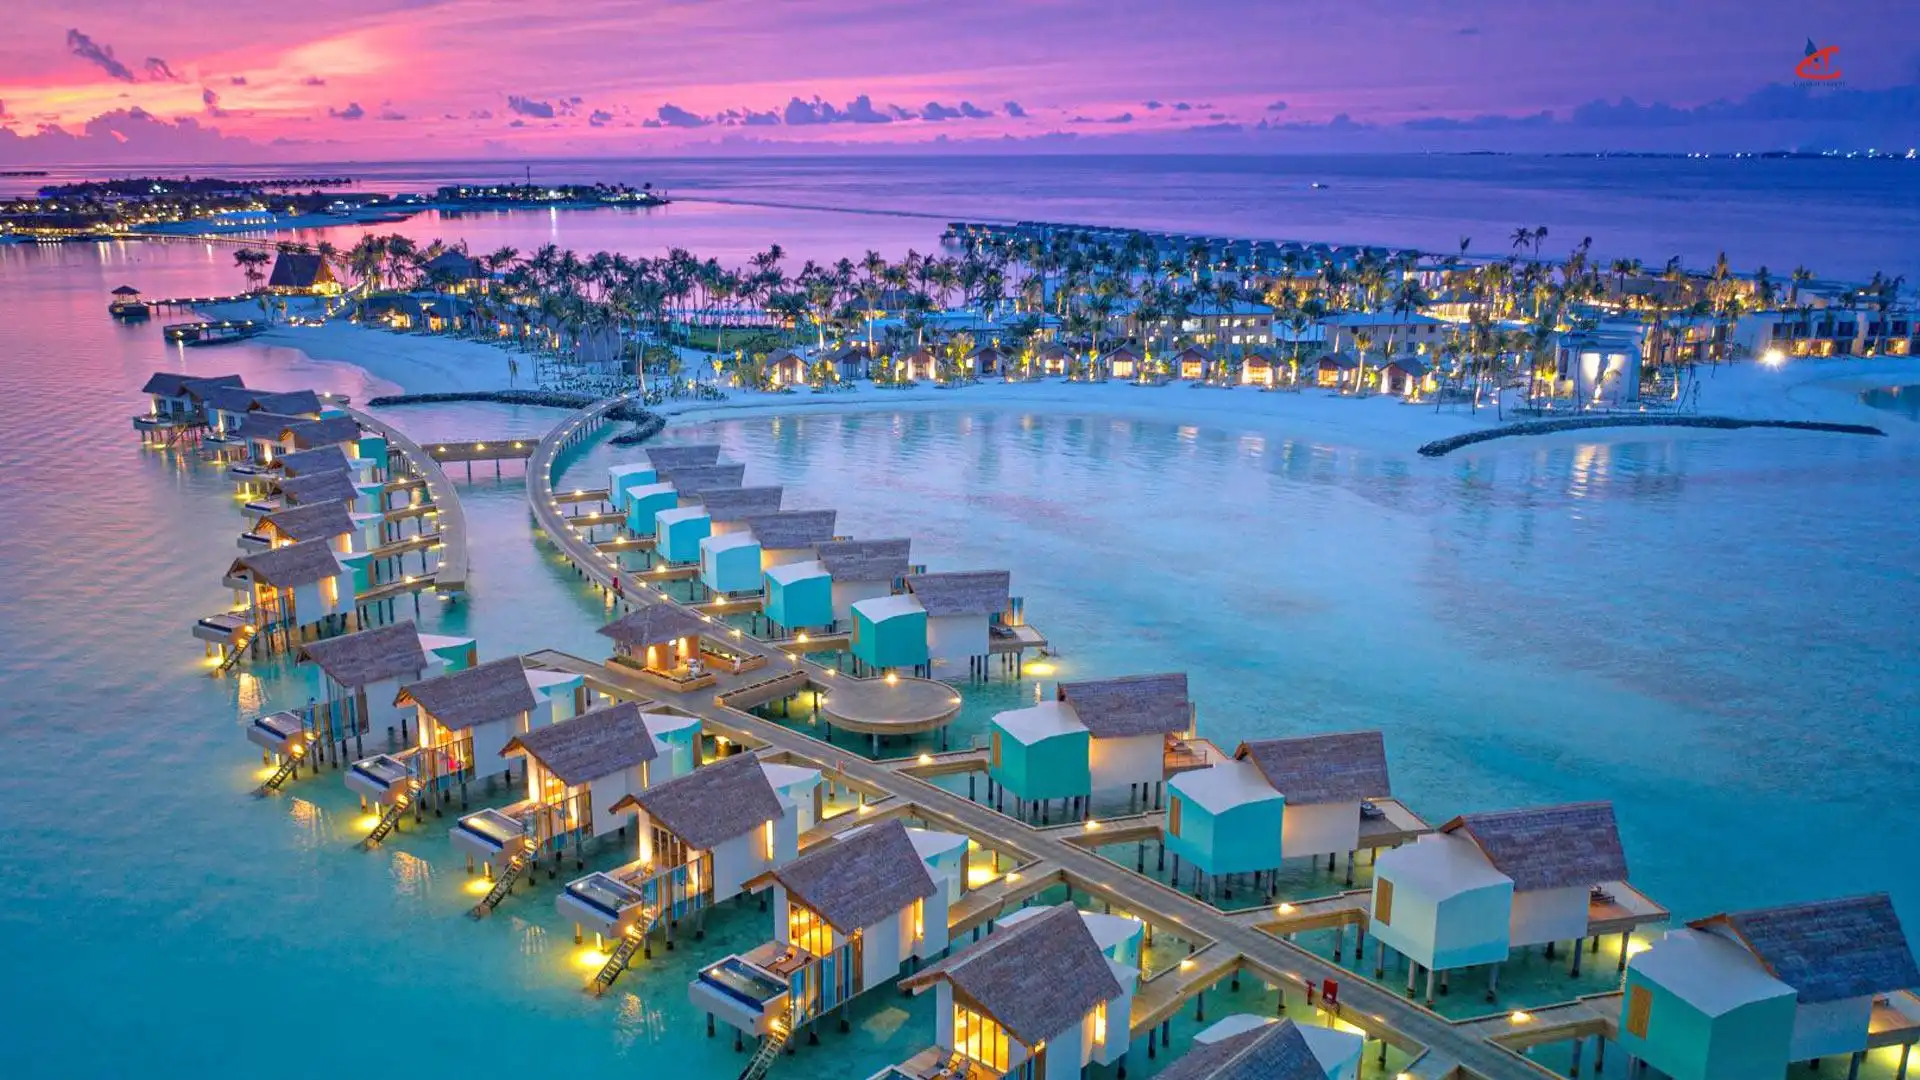 Hard Rock Hotel Maldives island